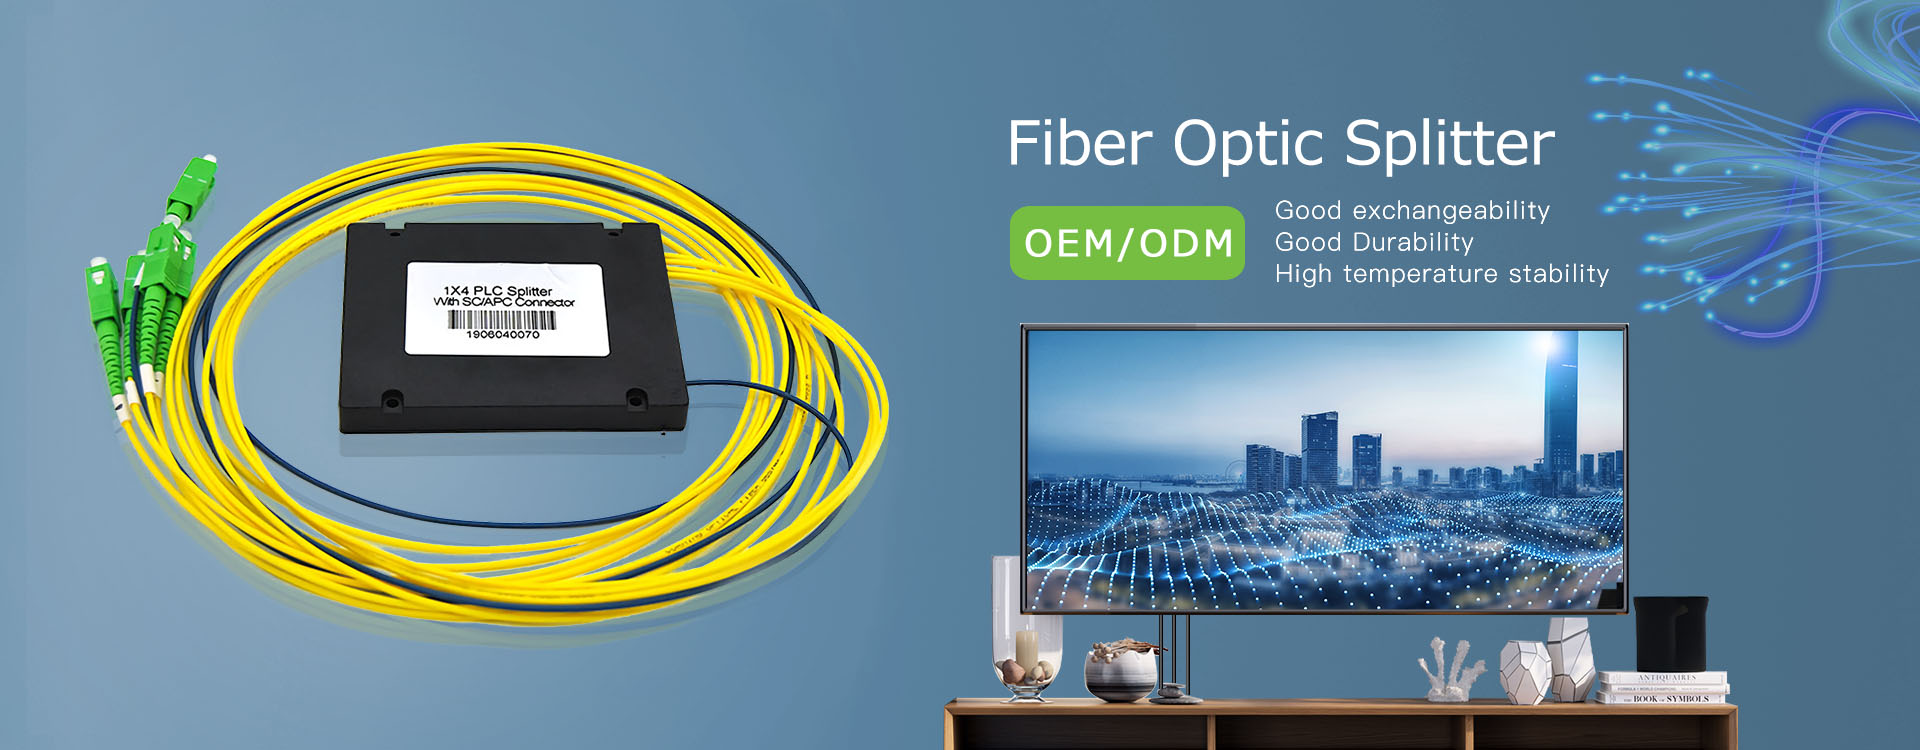 Desain Splitter Fiber Optic Presisi Tinggi Jual Terbaru untuk Pelanggan